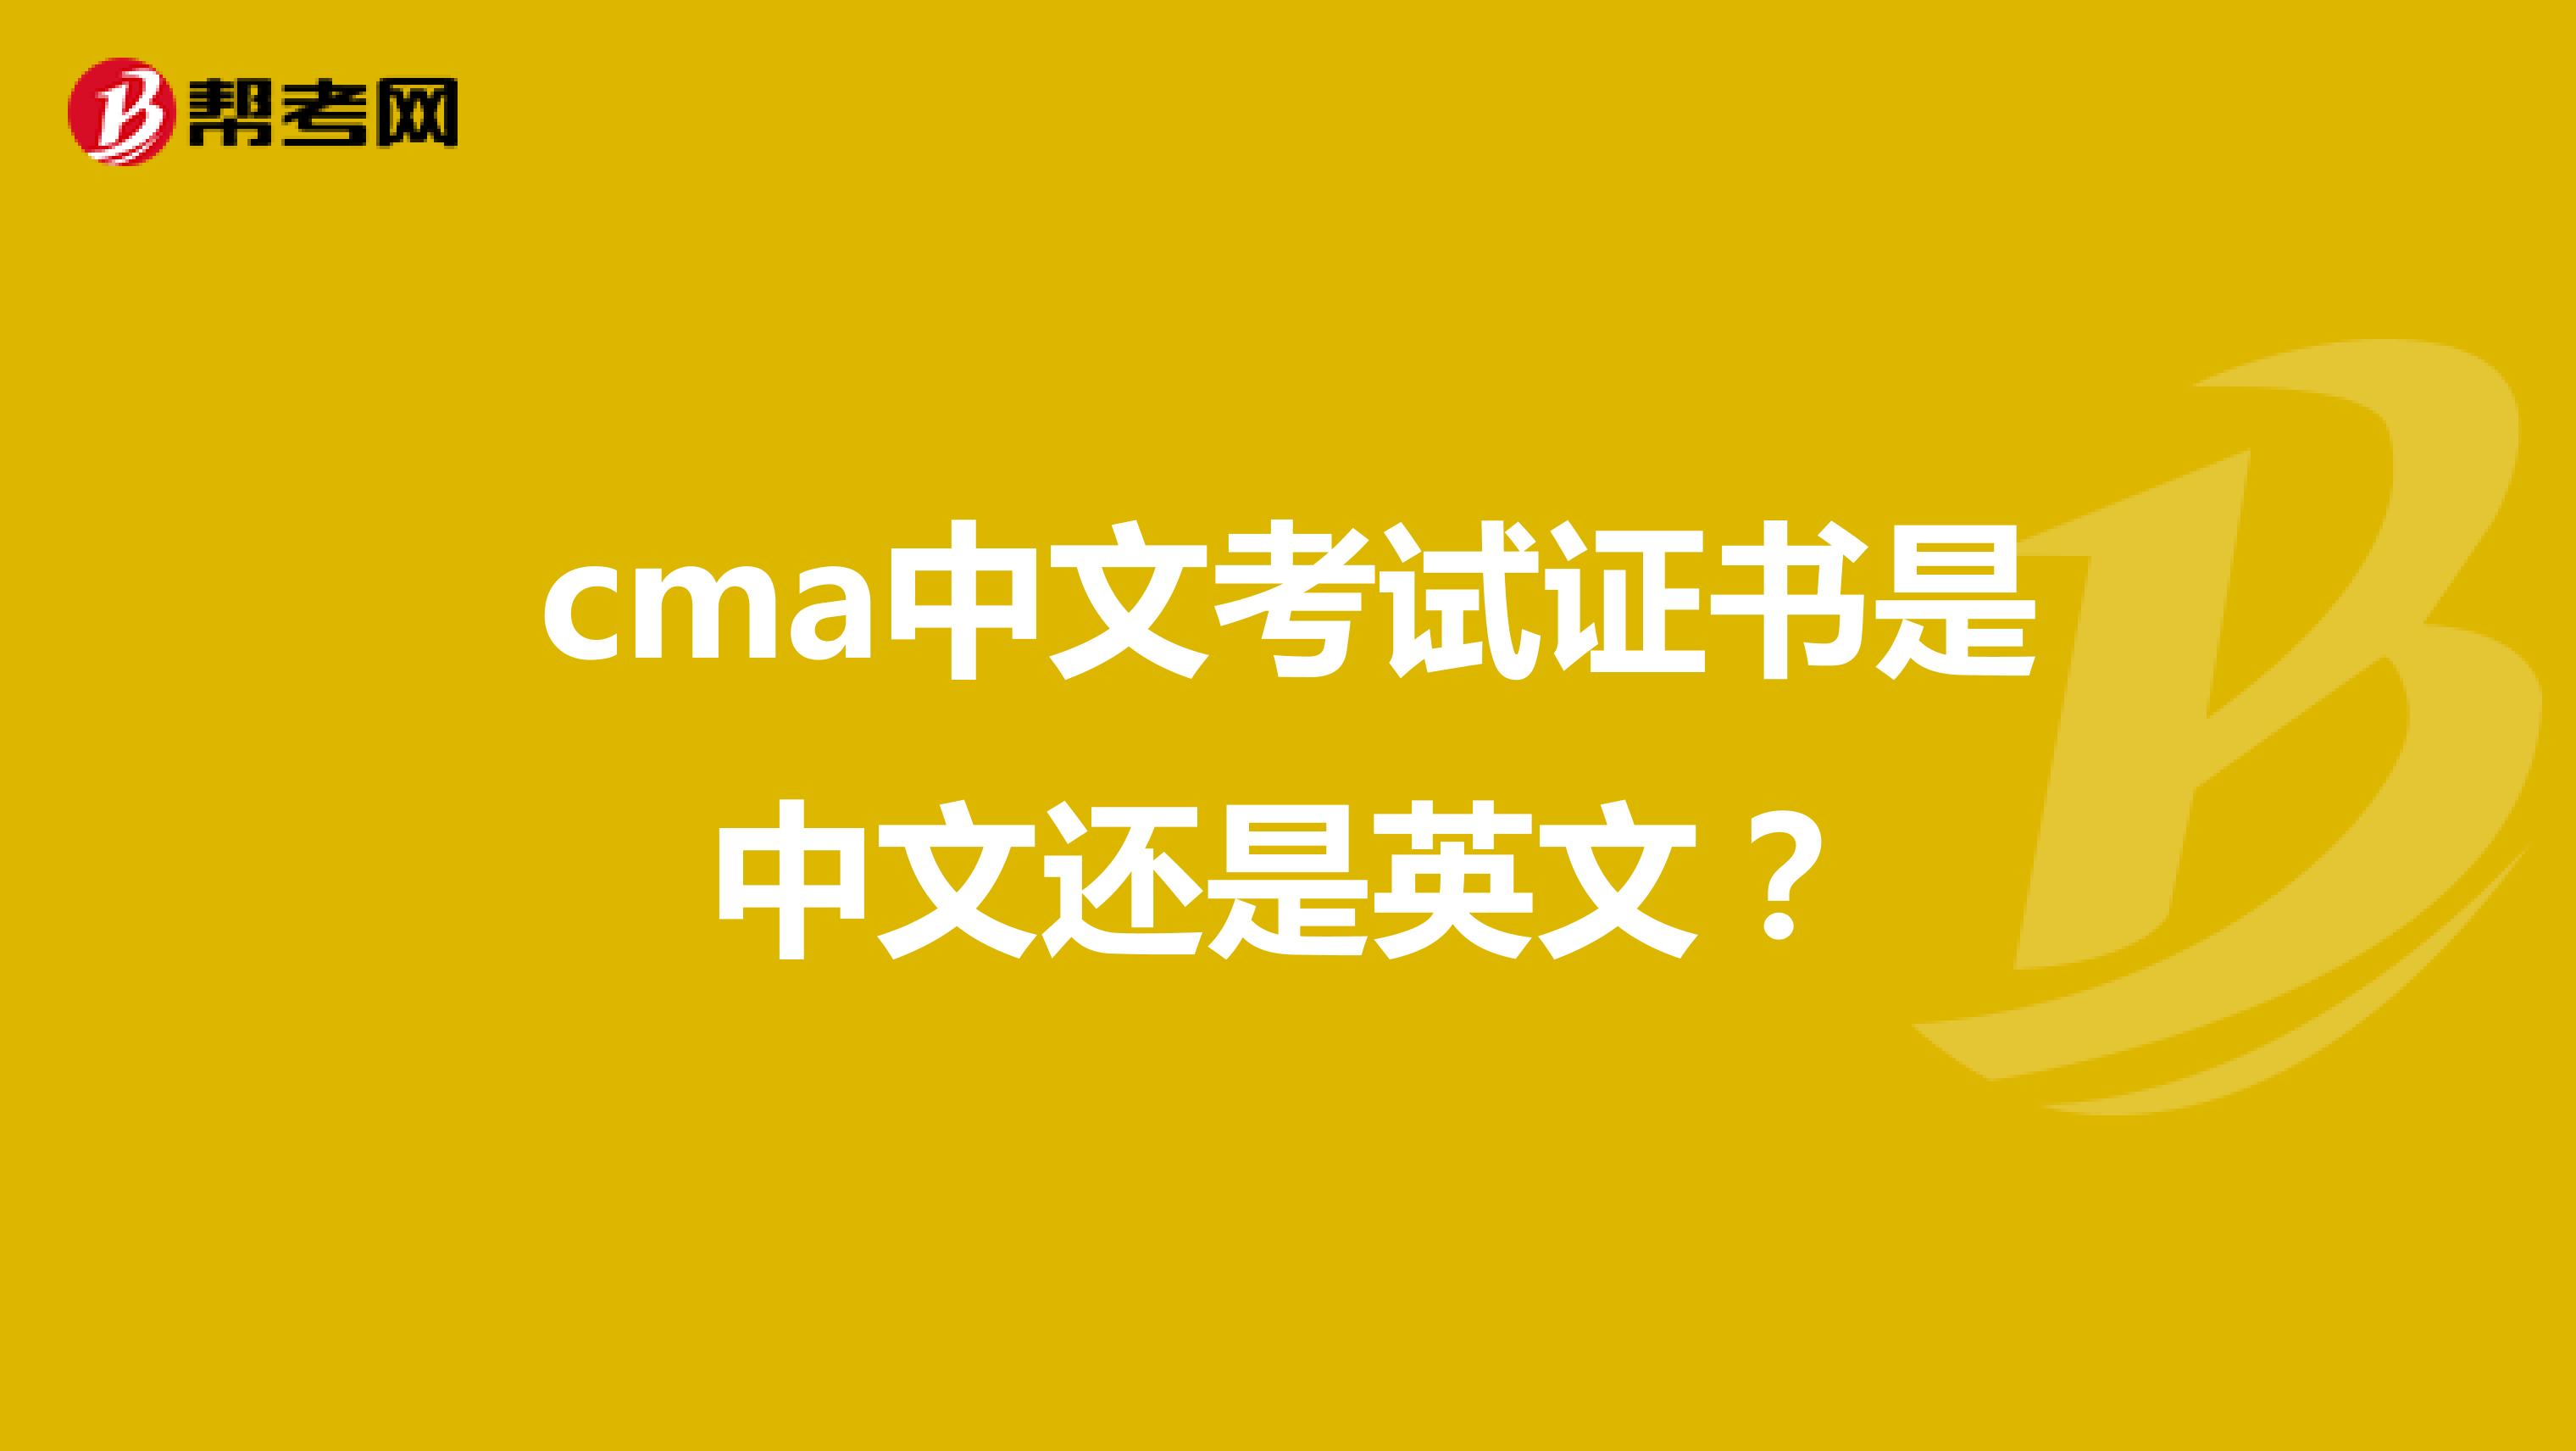 cma中文考试证书是中文还是英文？